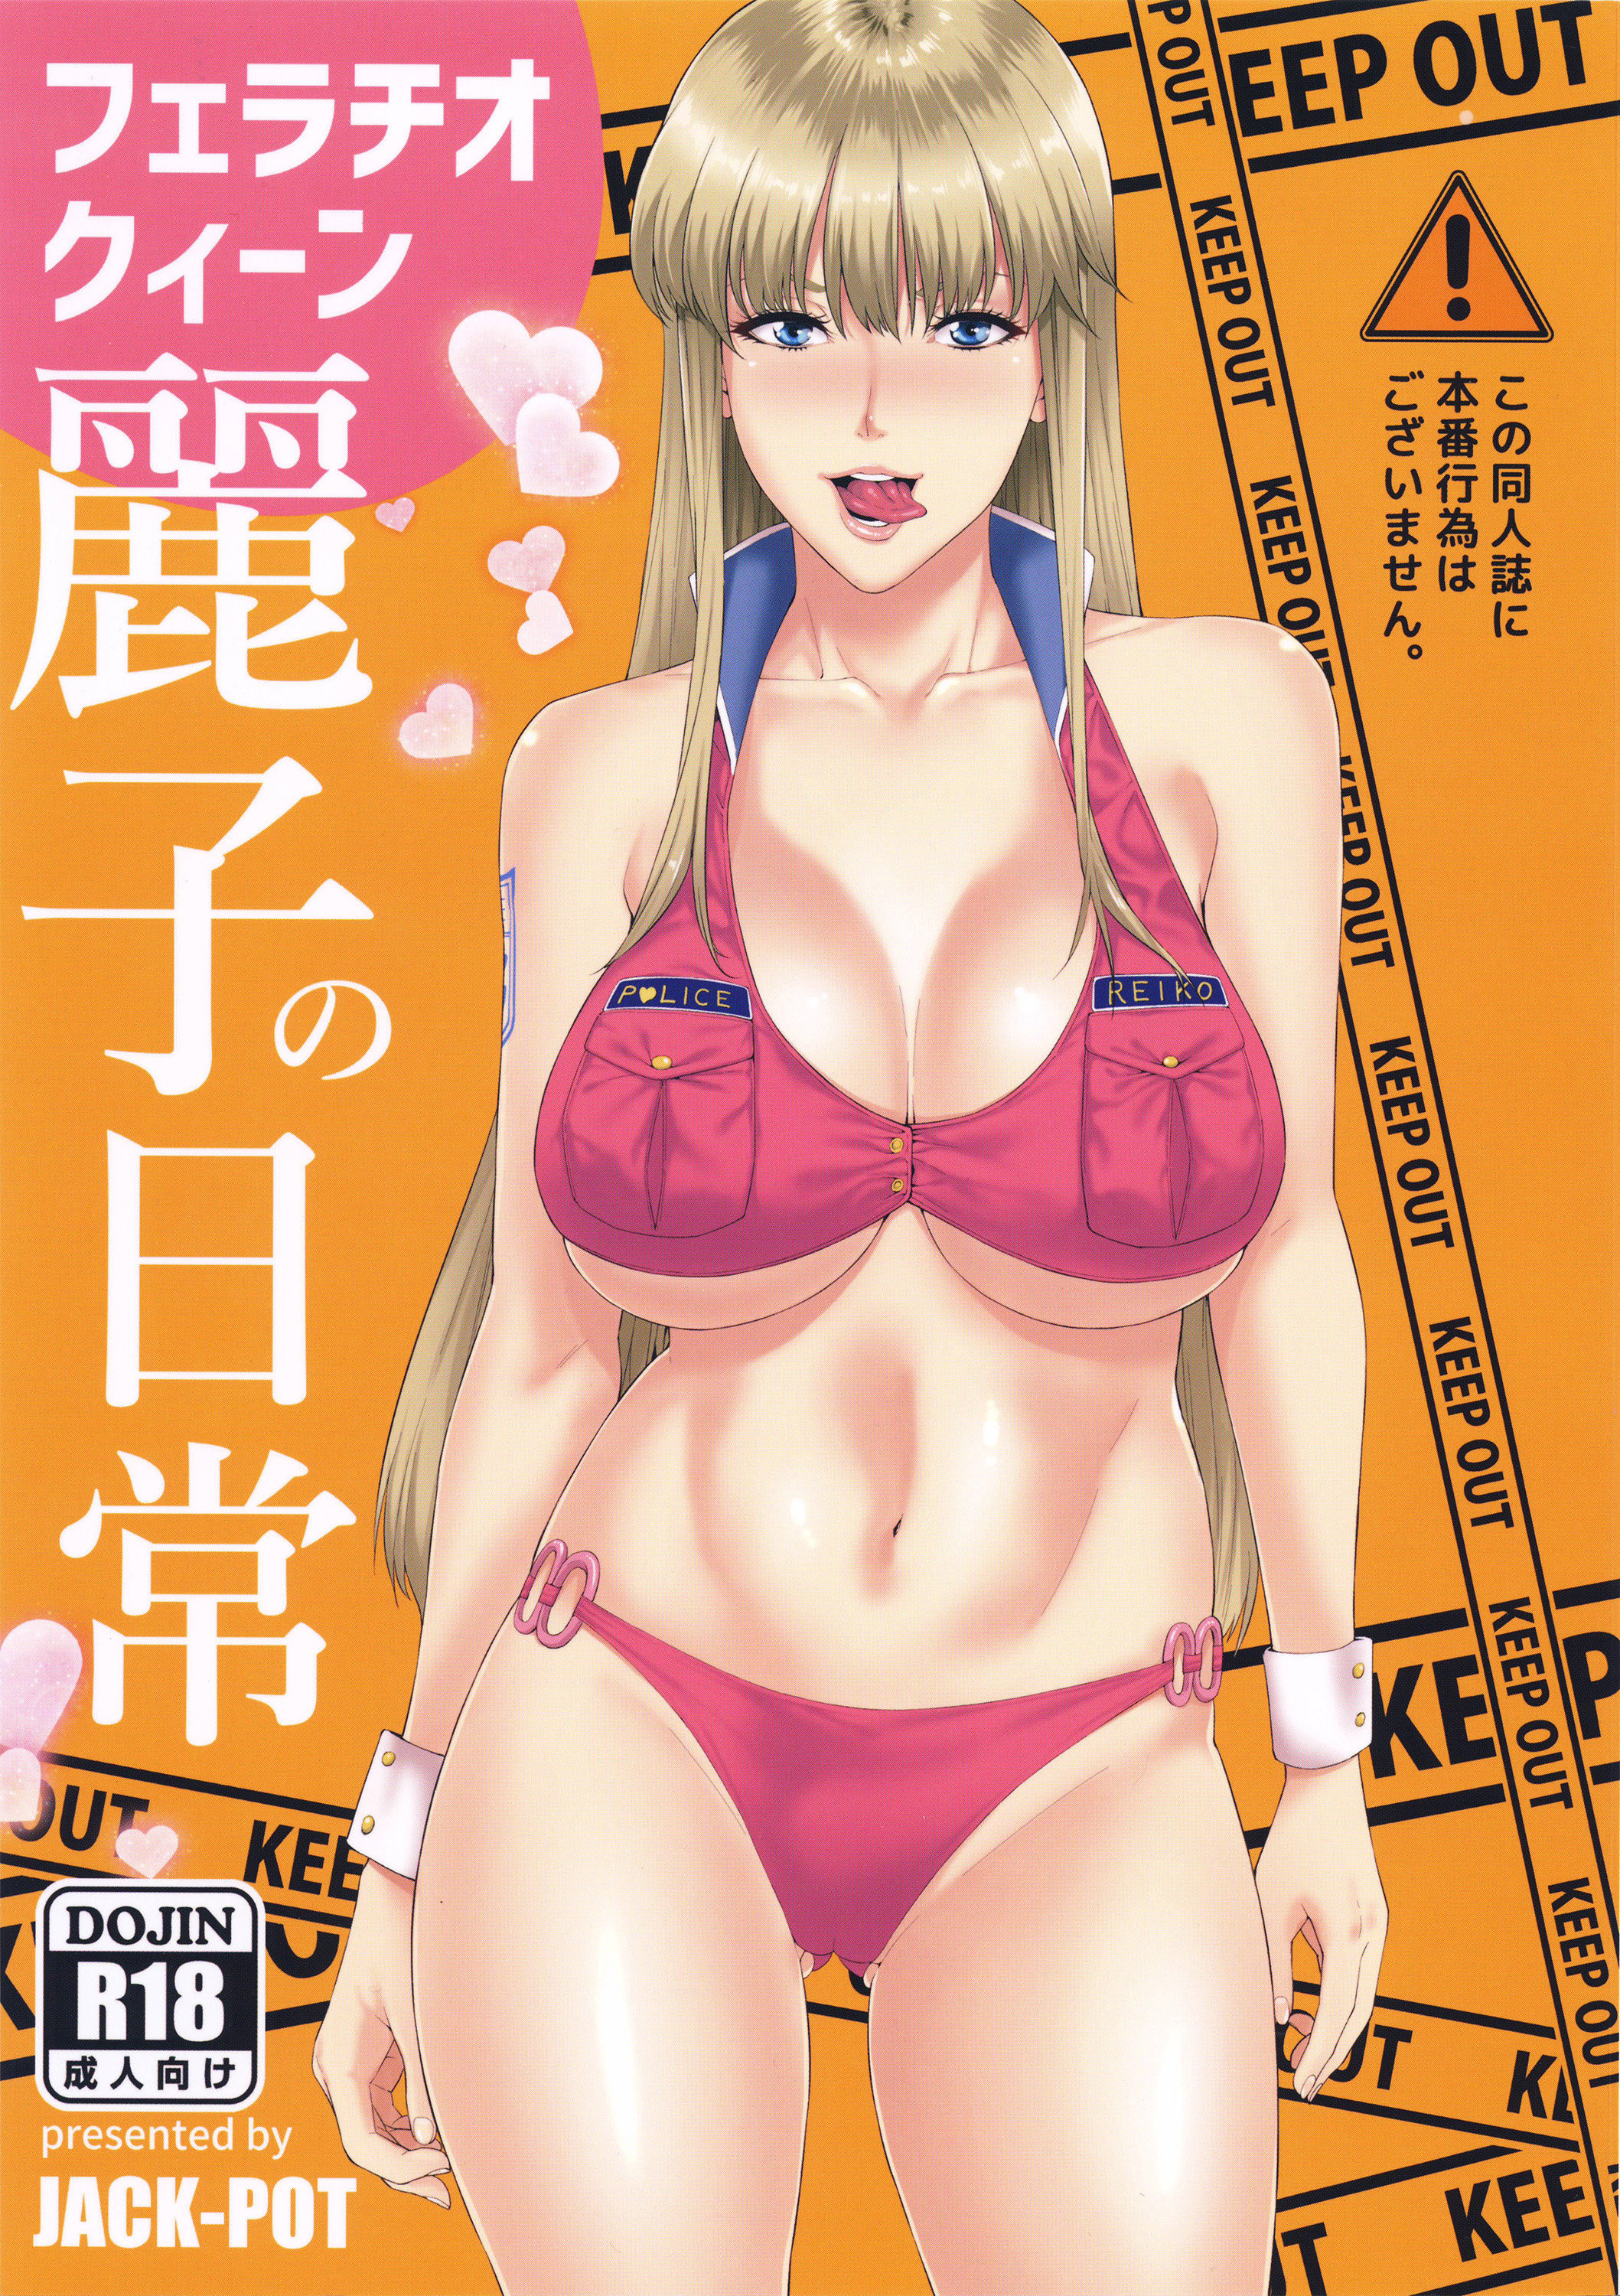 JACK-POT (Jyura) Fellatio Queen Reiko no Nichijou Hentai Comics